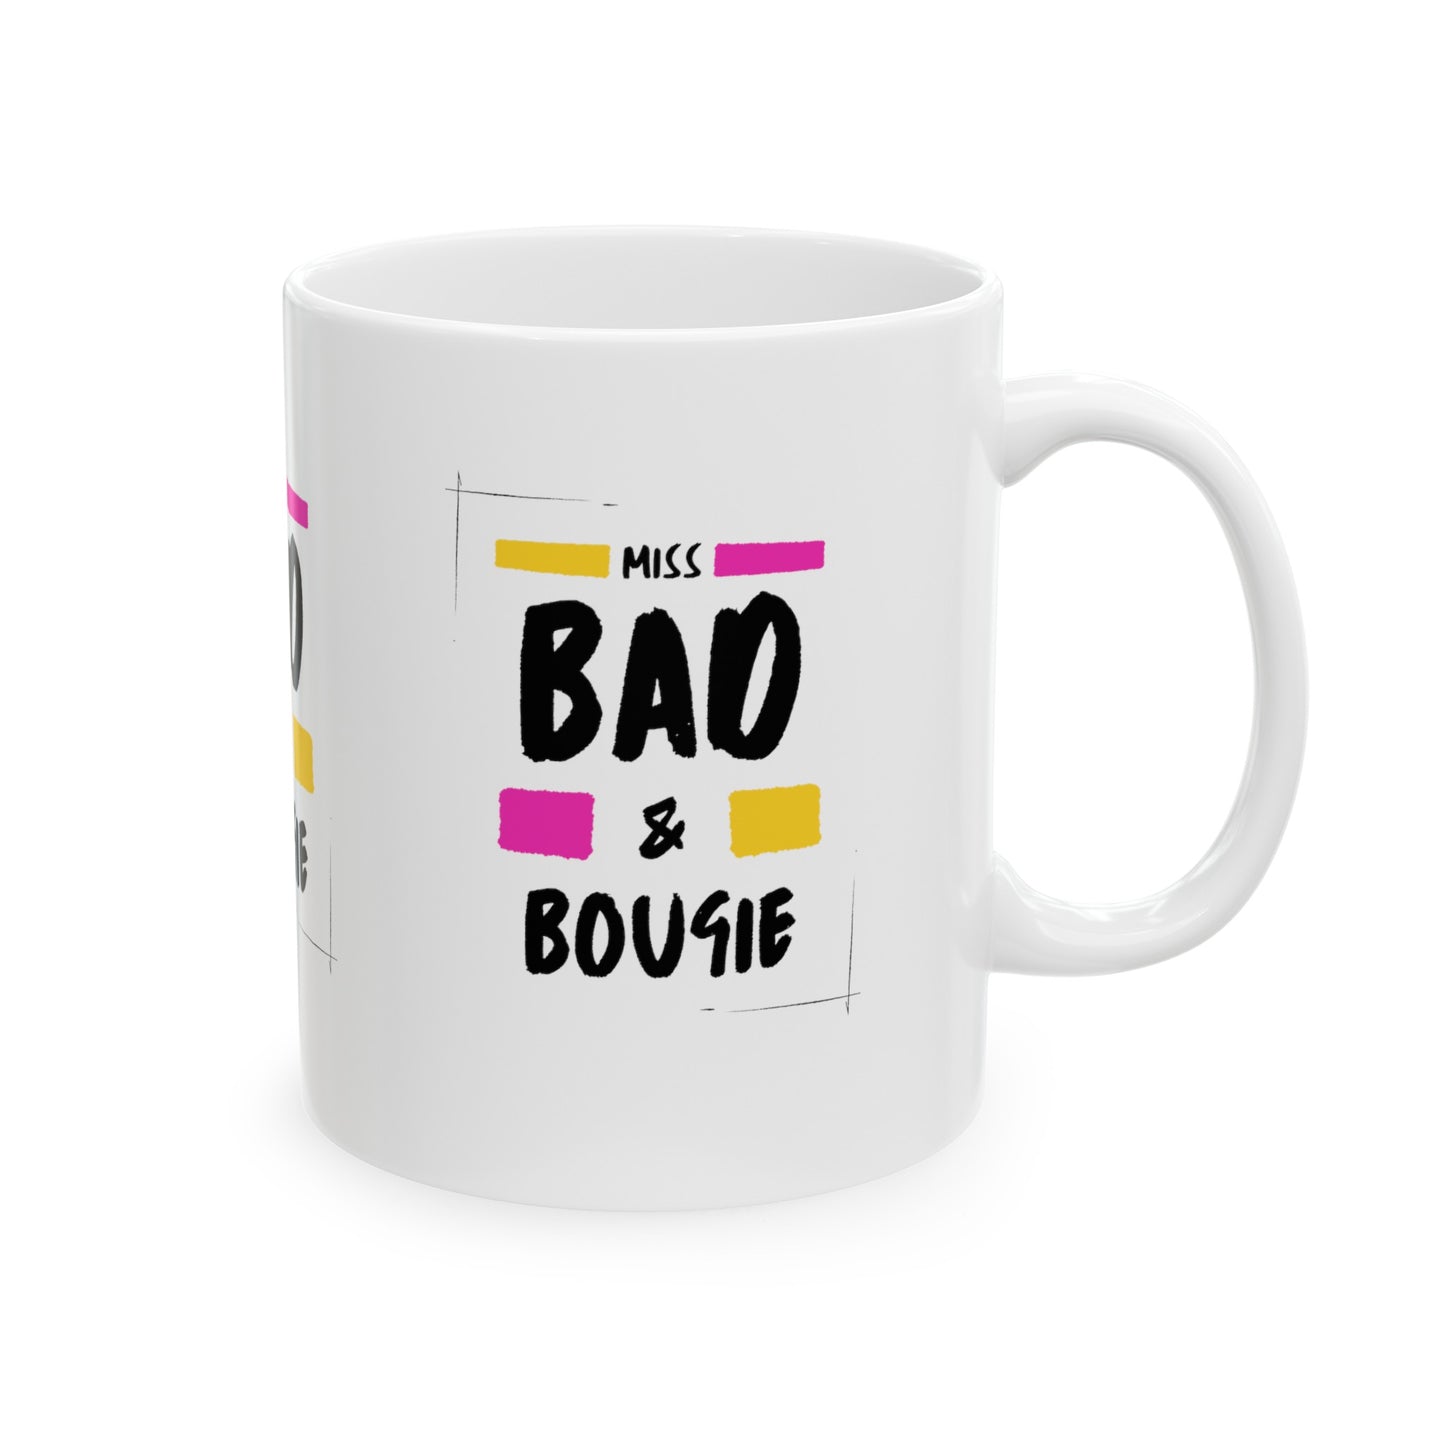 Bad & Bougie Coffee Mug, 11oz